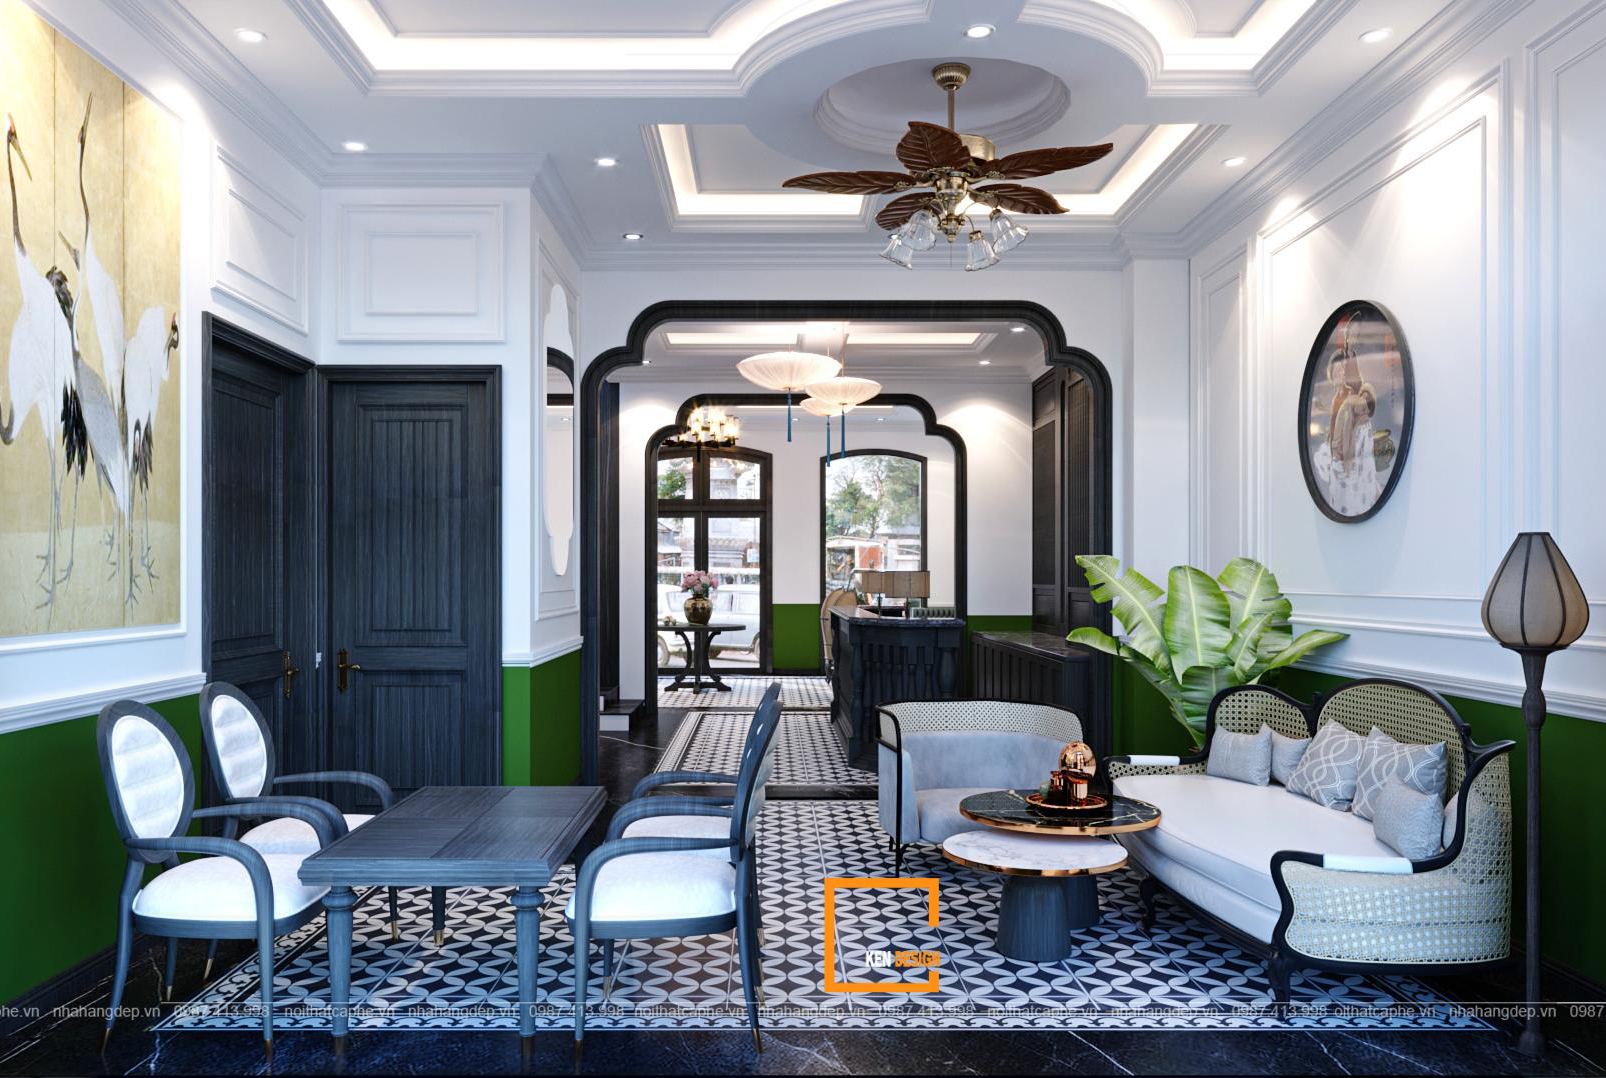 Với thiết kế khách sạn phong cách Indochine, quý khách sẽ được trải nghiệm một kỳ nghỉ đầy ngọt ngào và lãng mạn. Với nội thất truyền thống và các chi tiết kiến trúc độc đáo, khách sạn này là nơi hoàn hảo để thư giãn và tận hưởng những giây phút đáng nhớ. Đến và trải nghiệm ngay hôm nay!